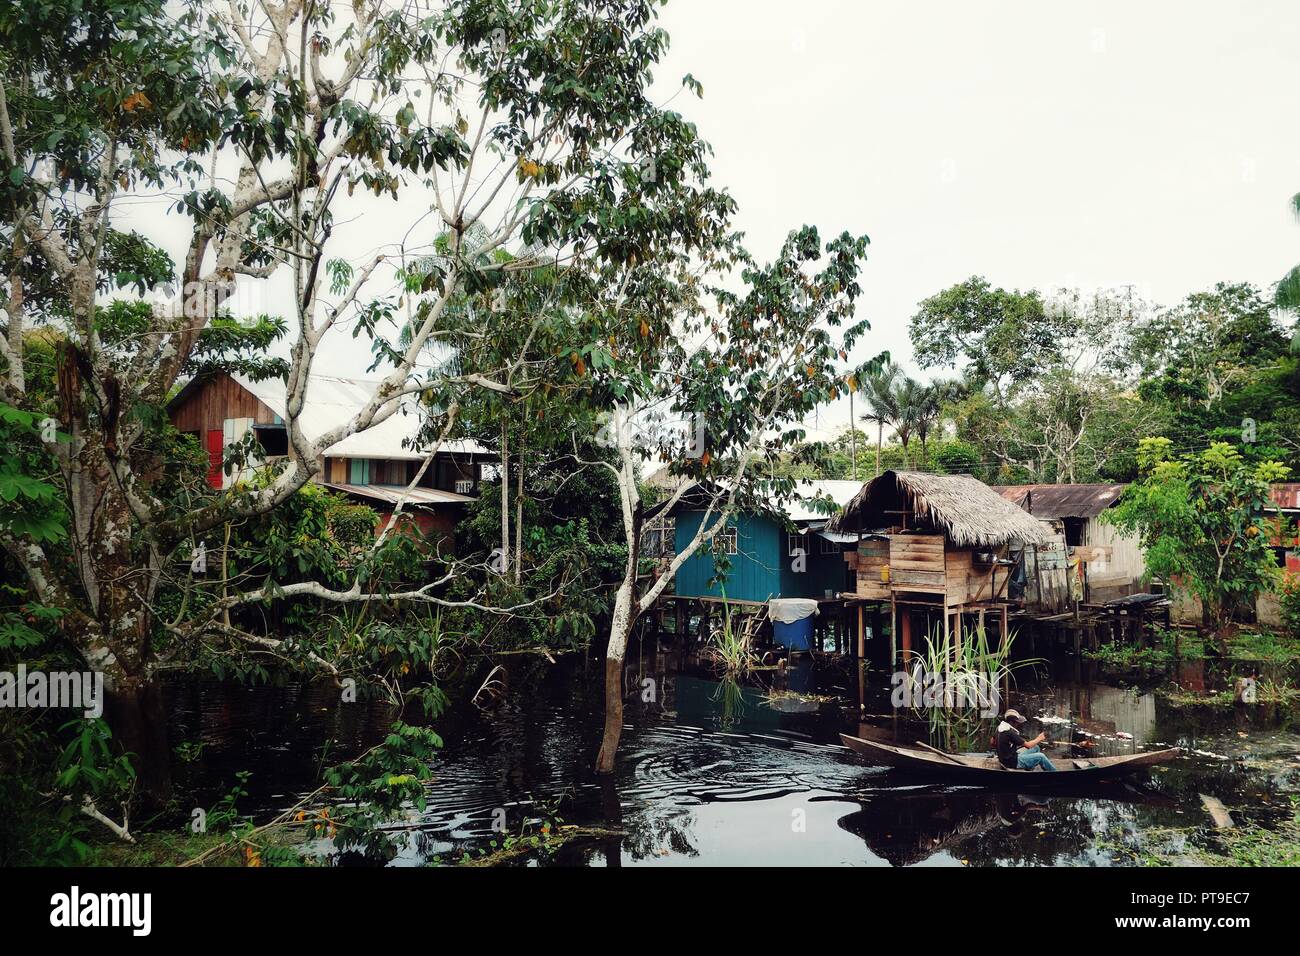 Des maisons sur pilotis sur le fleuve Amazone en Colombie avec un homme sur une pirogue Banque D'Images